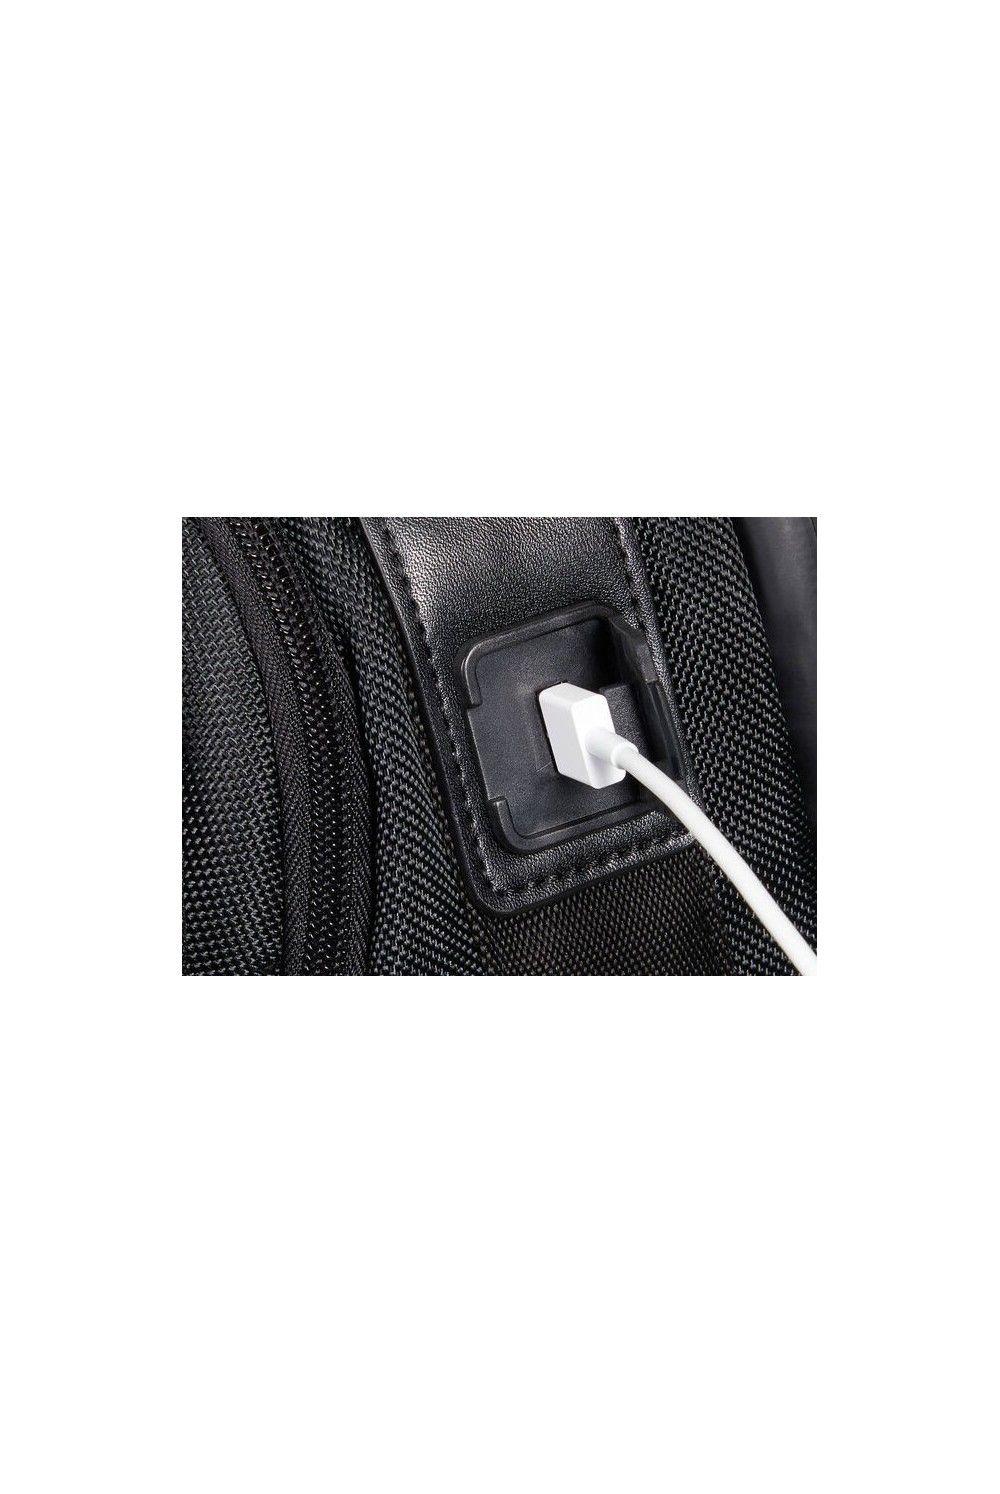 Samsonite Openroad 2.0 sac à dos pour ordinateur portable 15.6 pouces